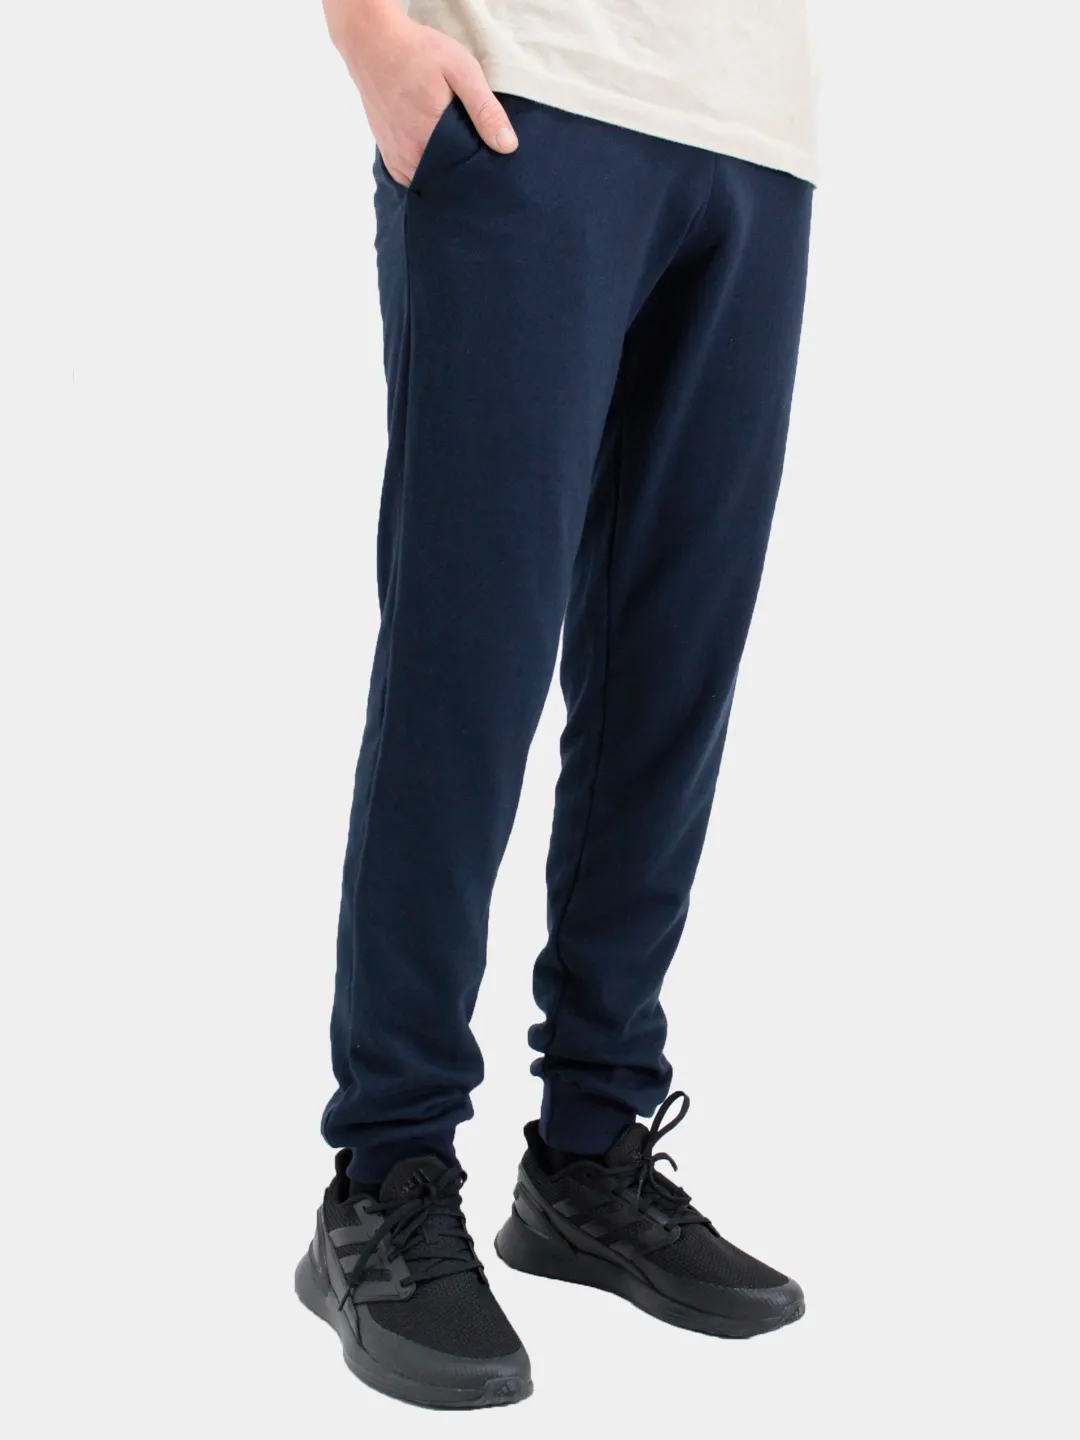 Мужские трикотажные брюки, утепленные спортивные штаны купить по цене 980 ₽в интернет-магазине KazanExpress